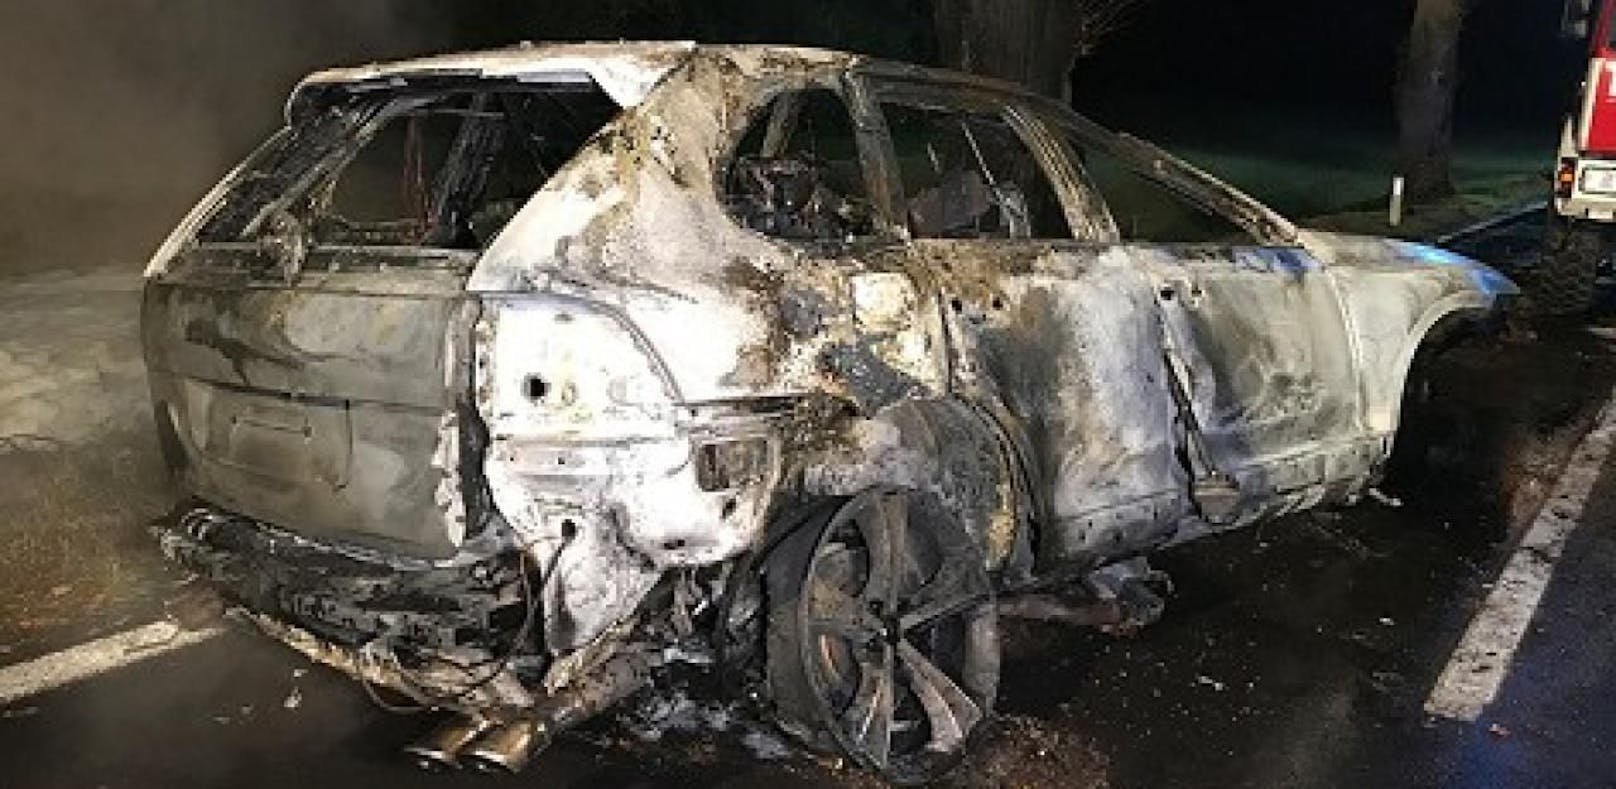 Porsche in Flammen: Toter dürfte Unternehmer sein